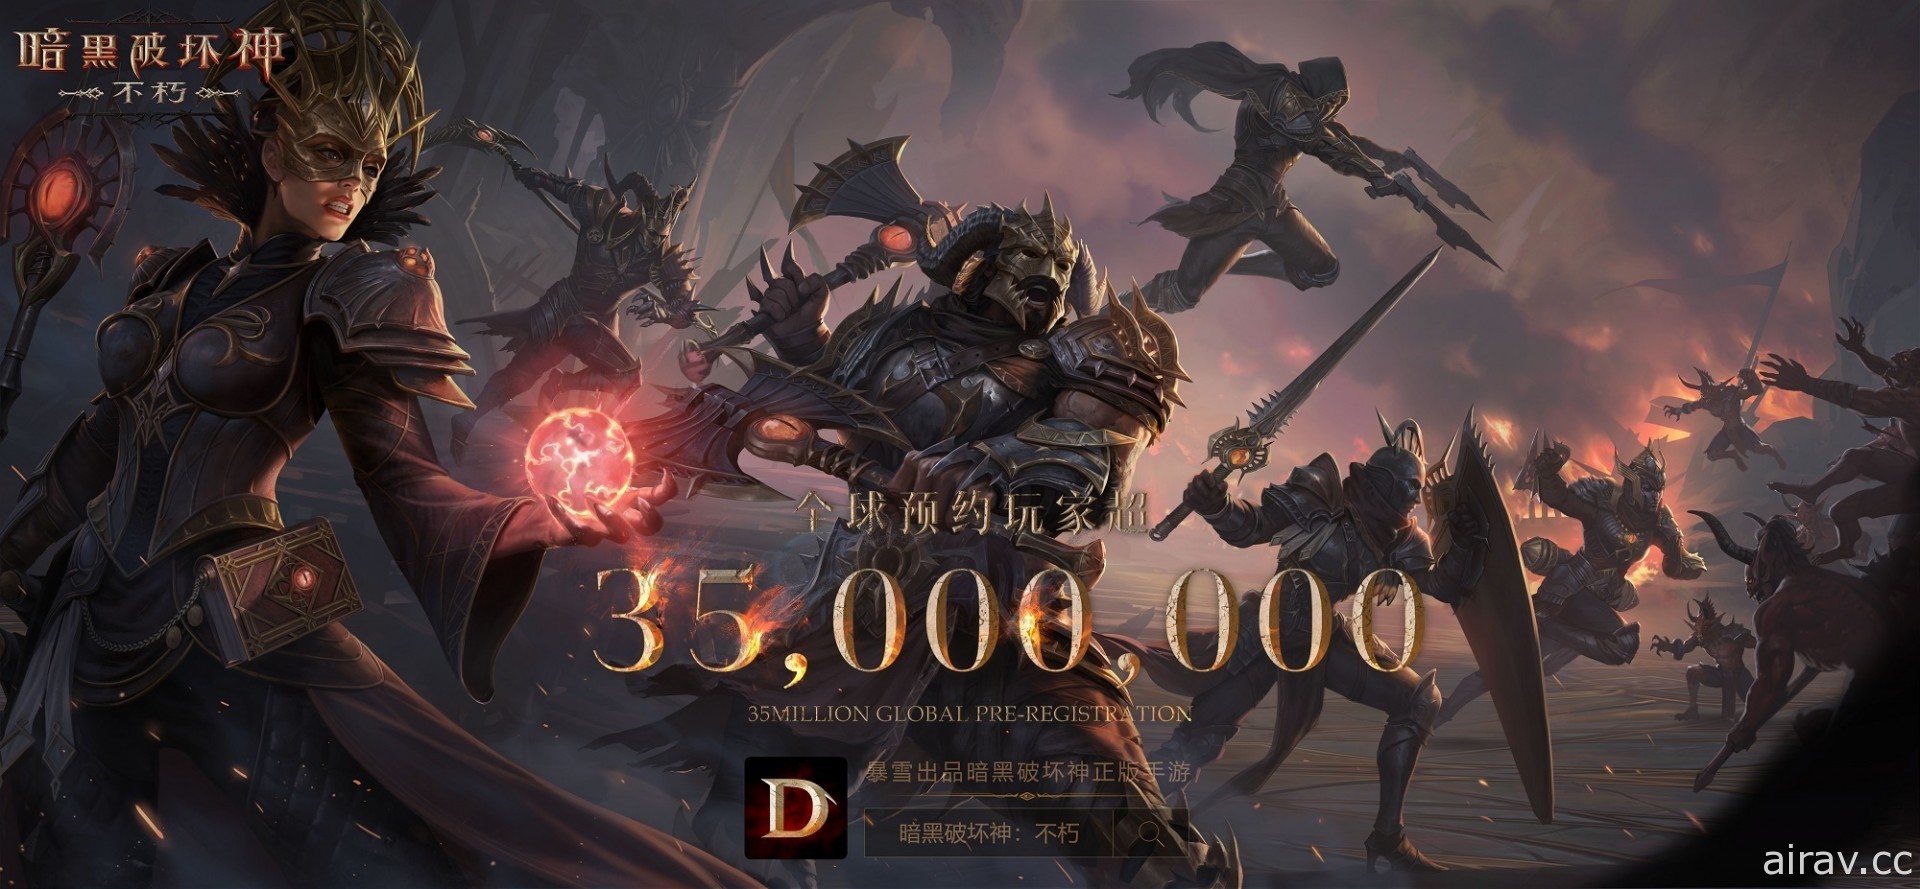 《暗黑破坏神 永生不朽》宣布全球事前登录突破 3,500 万 6 月 23 日于中国区全平台上线